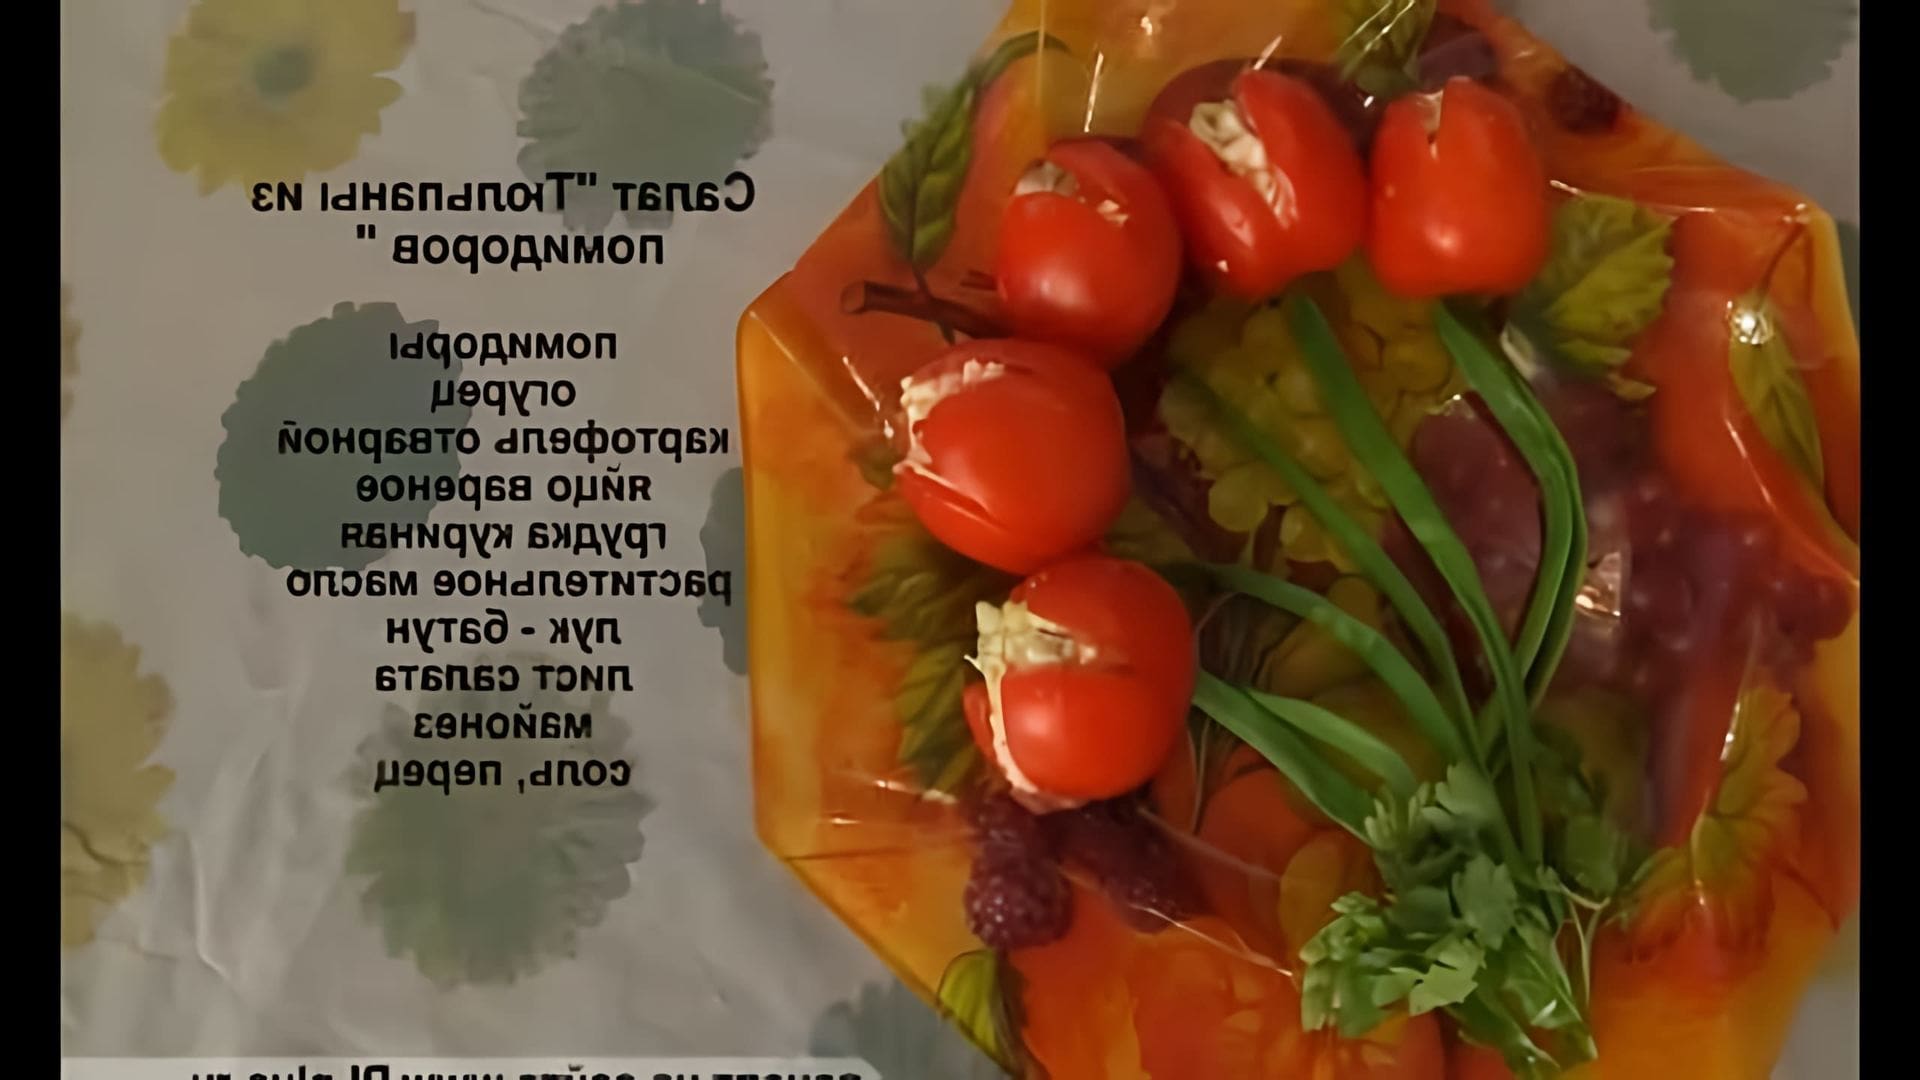 В этом видео рассказывается о приготовлении салата "Тюльпаны" из помидоров